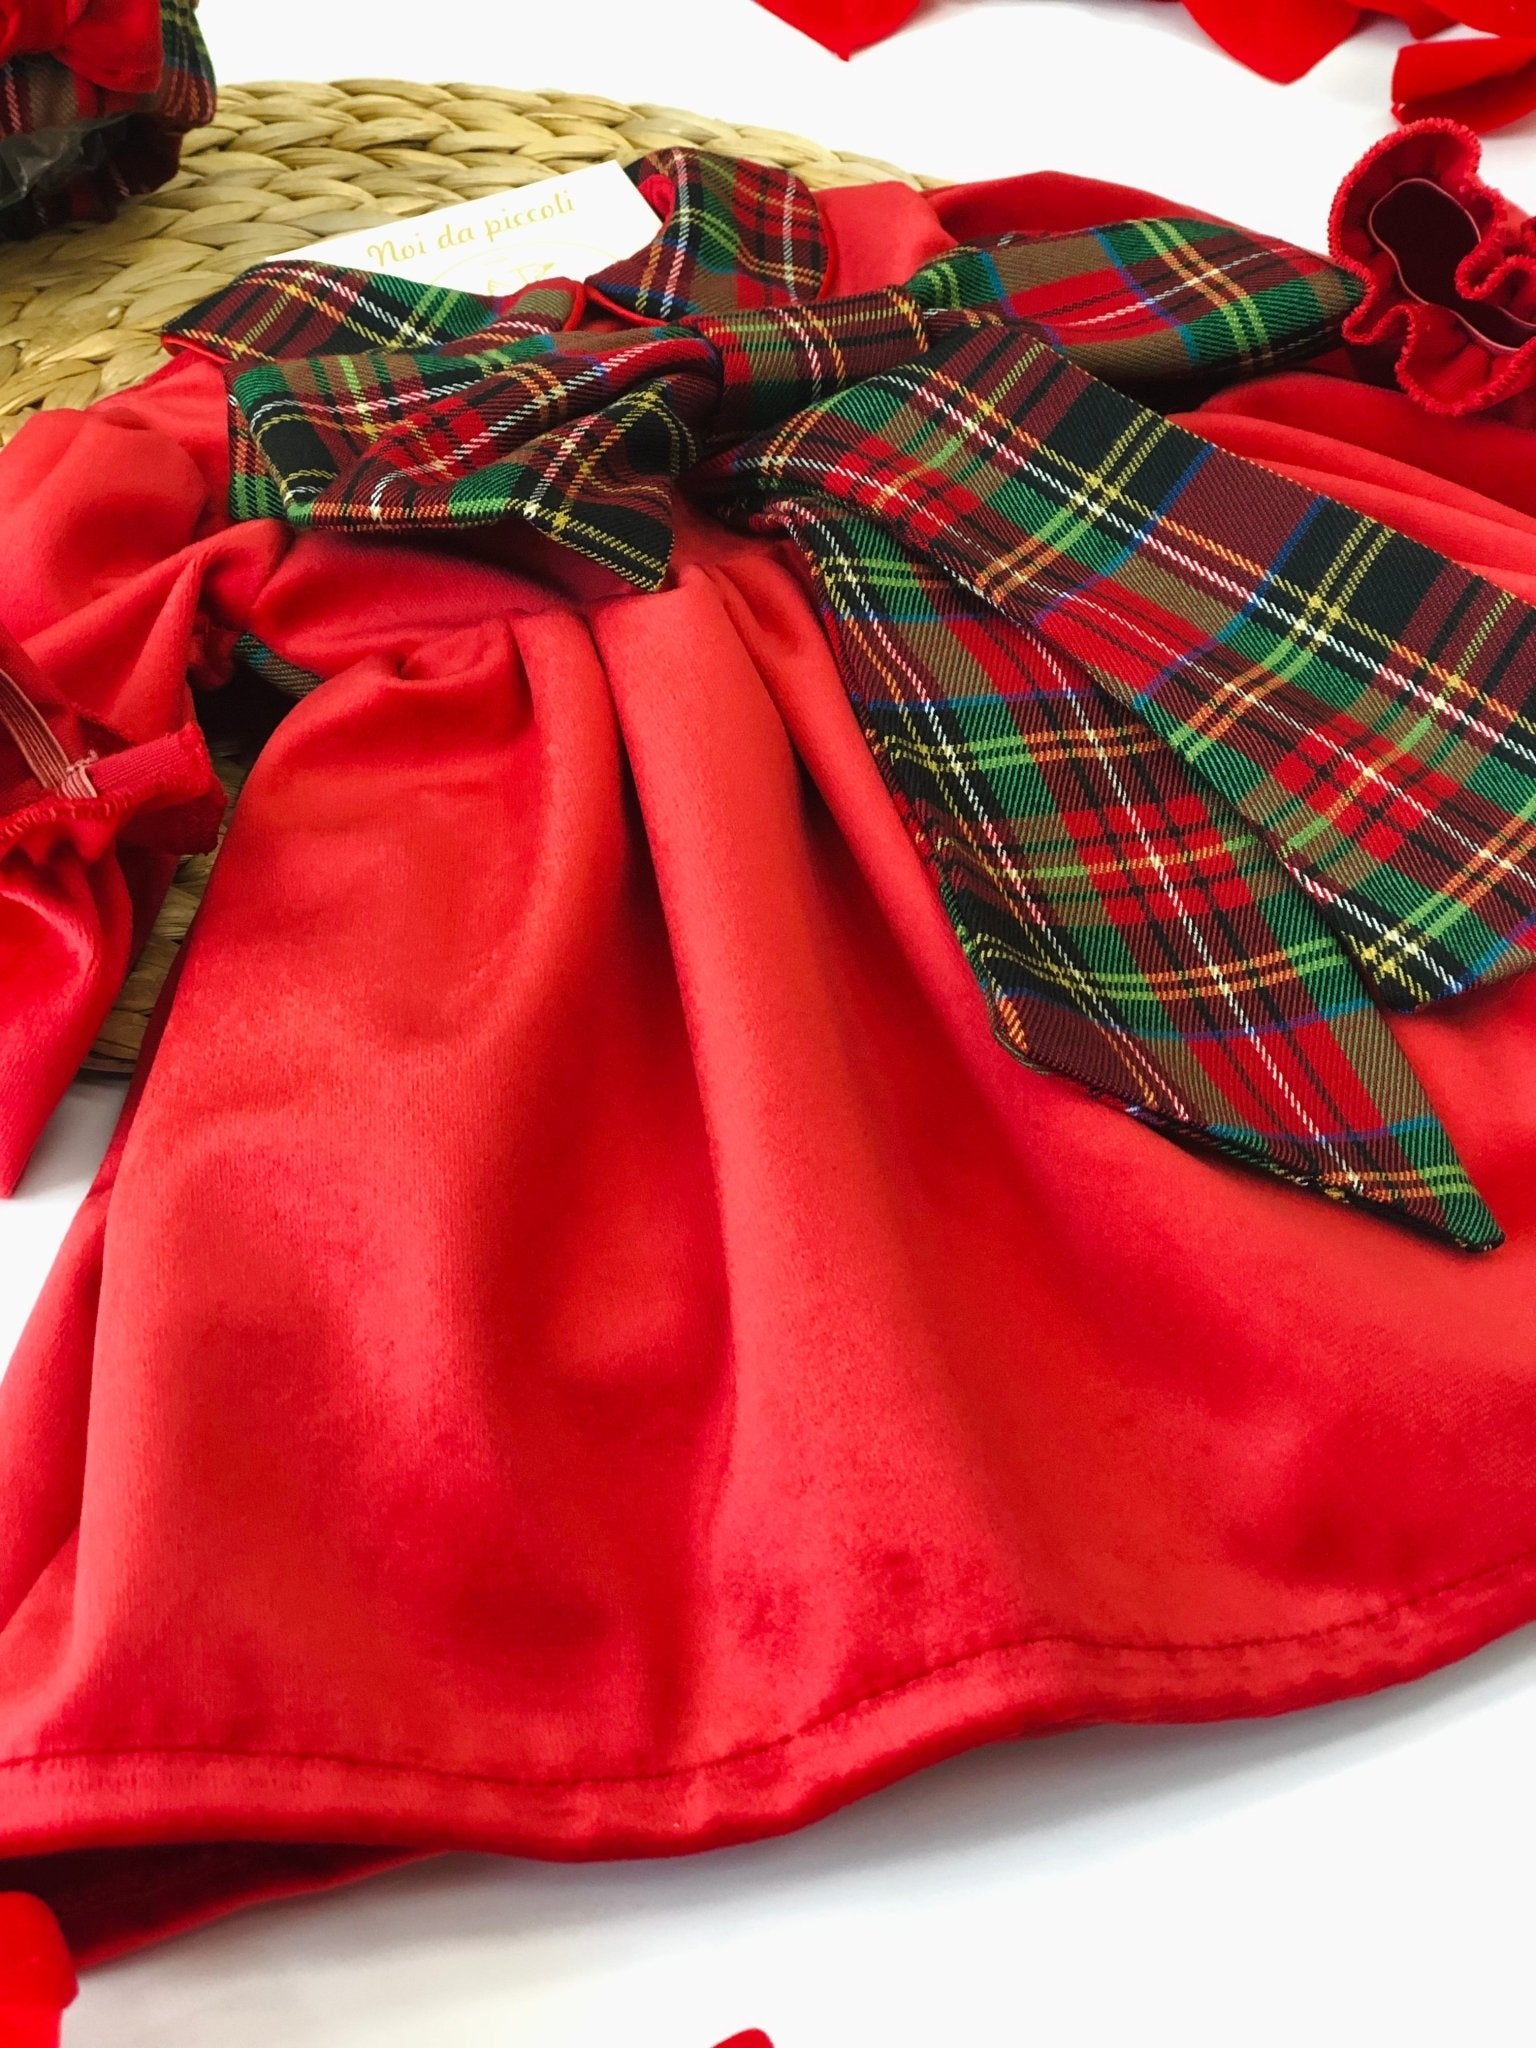 RED VELVET DRESS WITH SCOTTISH BOW